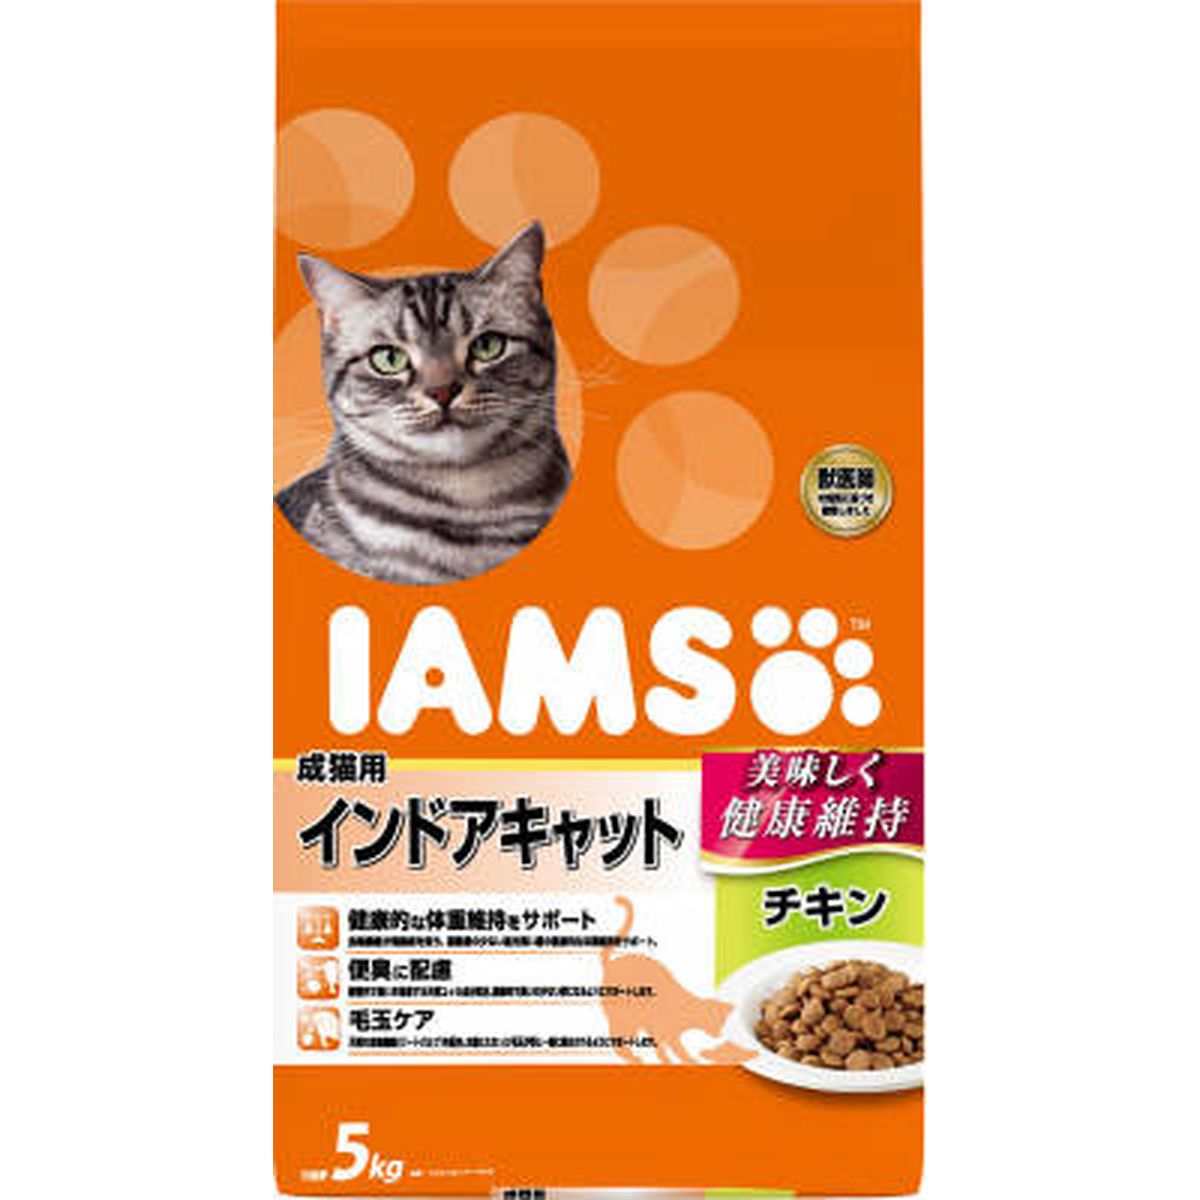 素晴らしい品質 マースジャパン アイムス 成猫用 インドアキャット チキン 5kg 1ケース2個セット